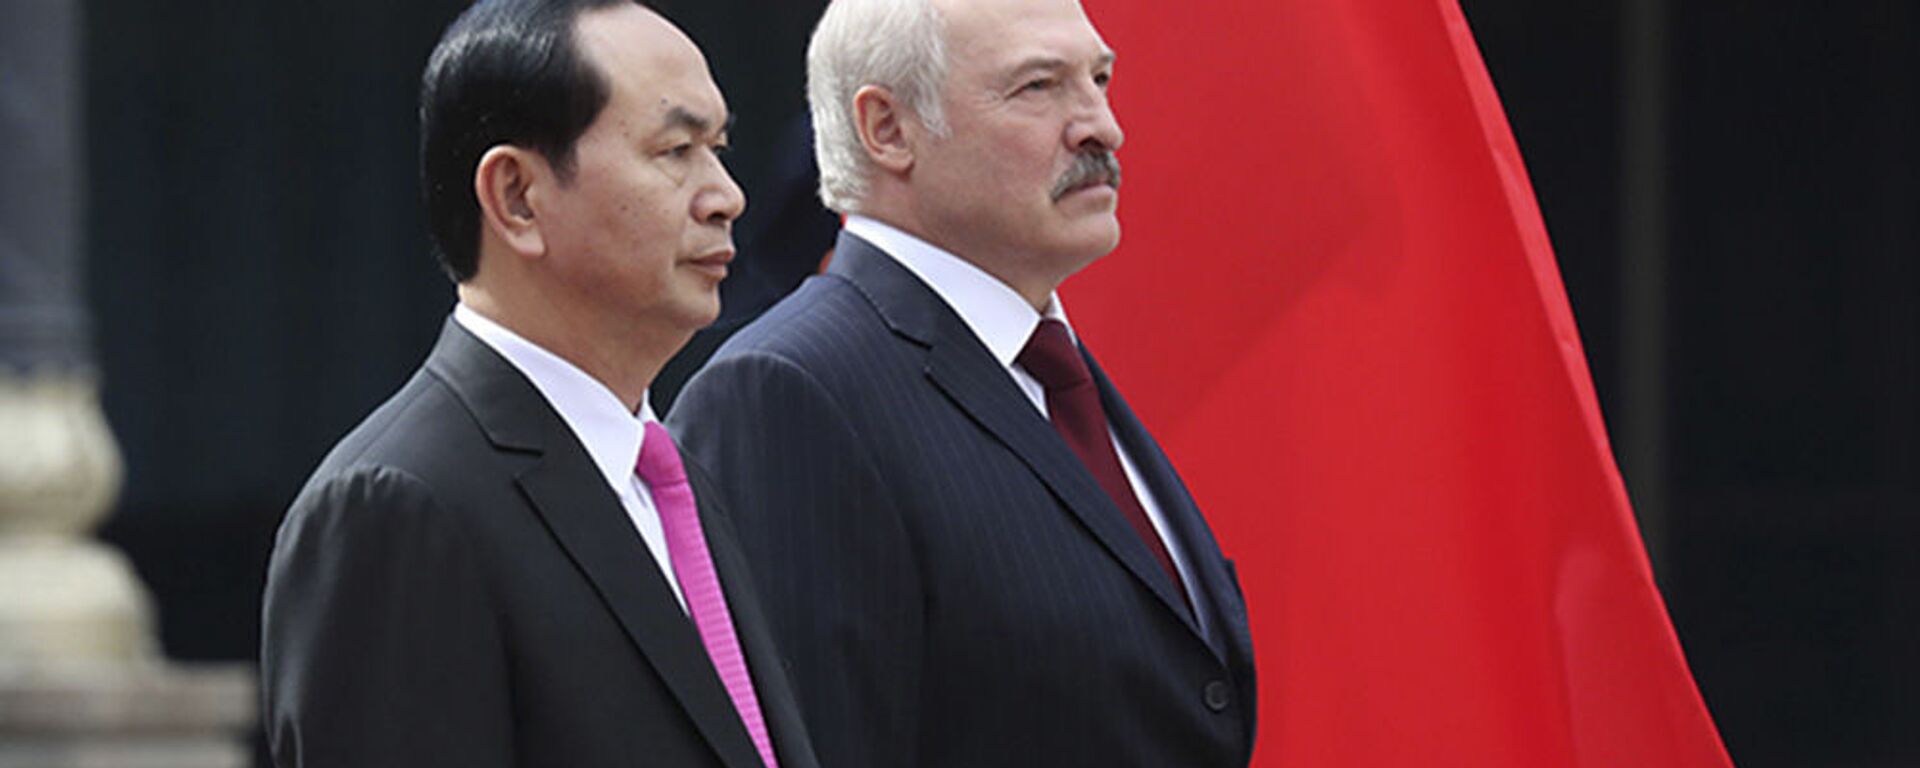 Tổng thống Belarus Alexandr Lukashenko với Chủ tịch Việt Nam Trần Đại Quang - Sputnik Việt Nam, 1920, 27.06.2017